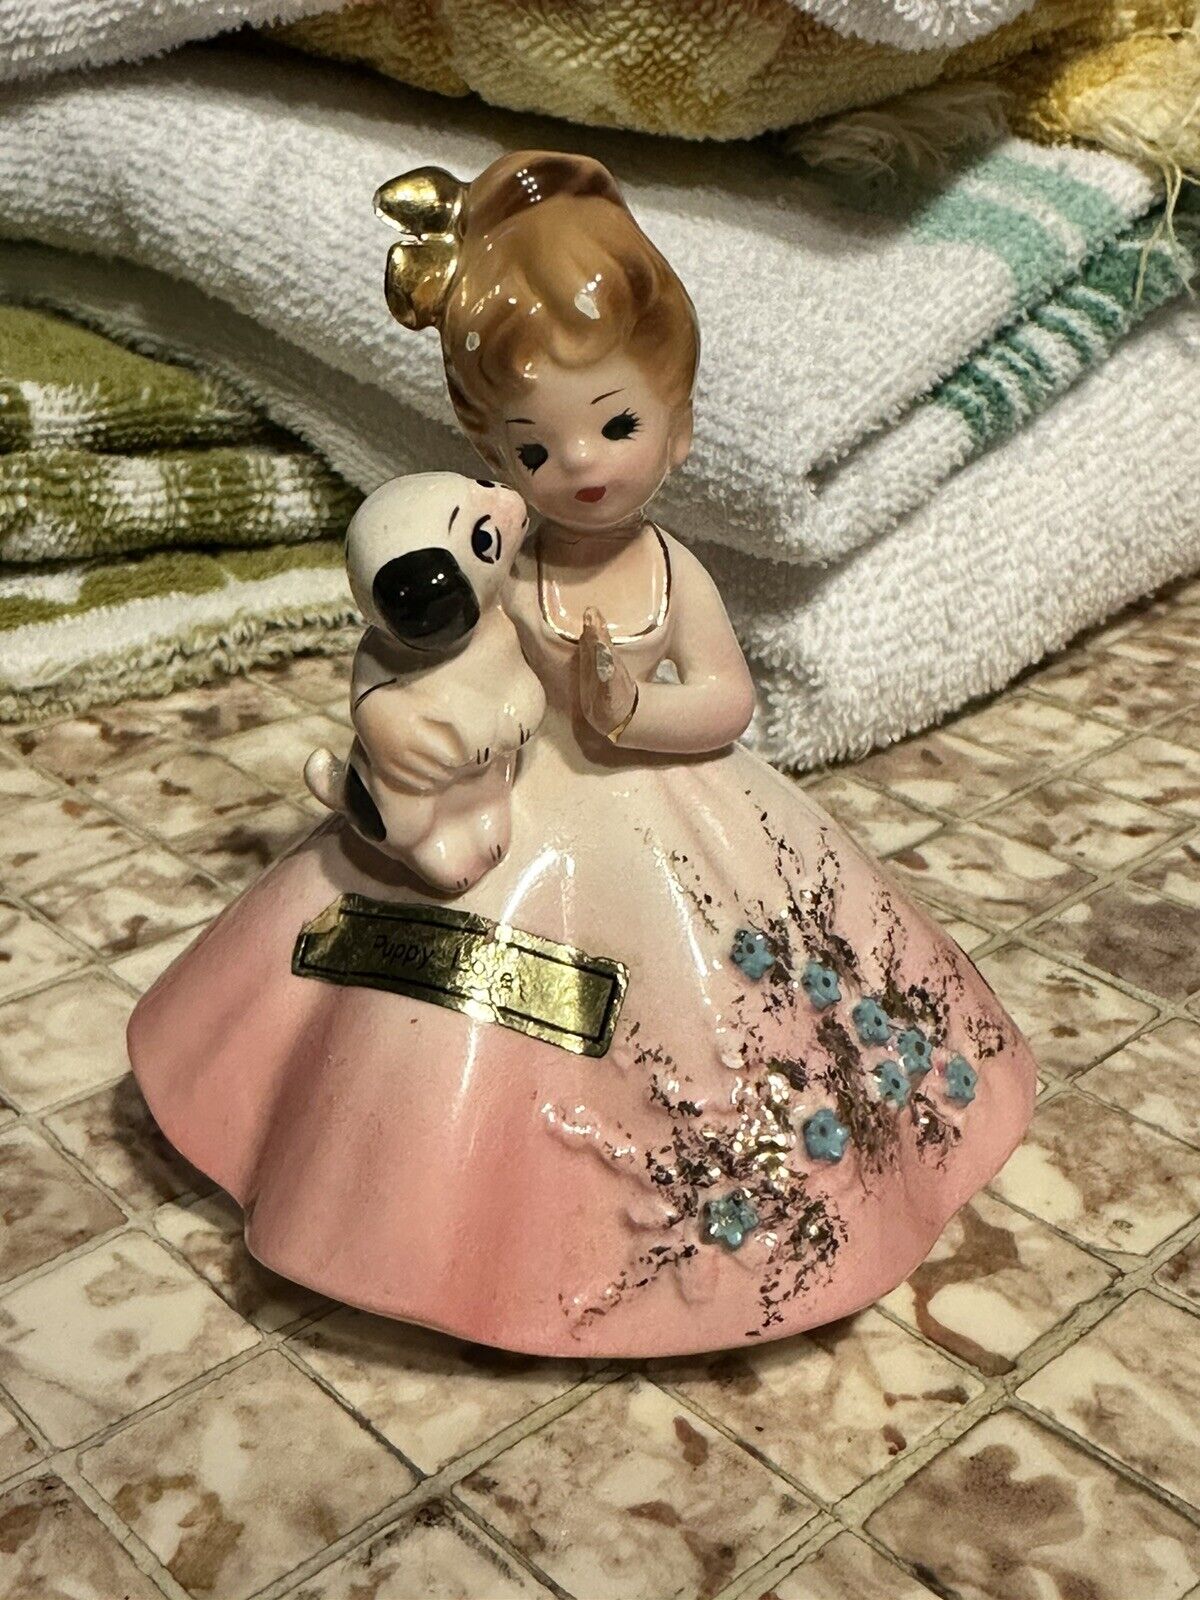 VTG Josef Originals Favorite Sayings Figurine Puppy Love Girl Pink Dress REPAIR